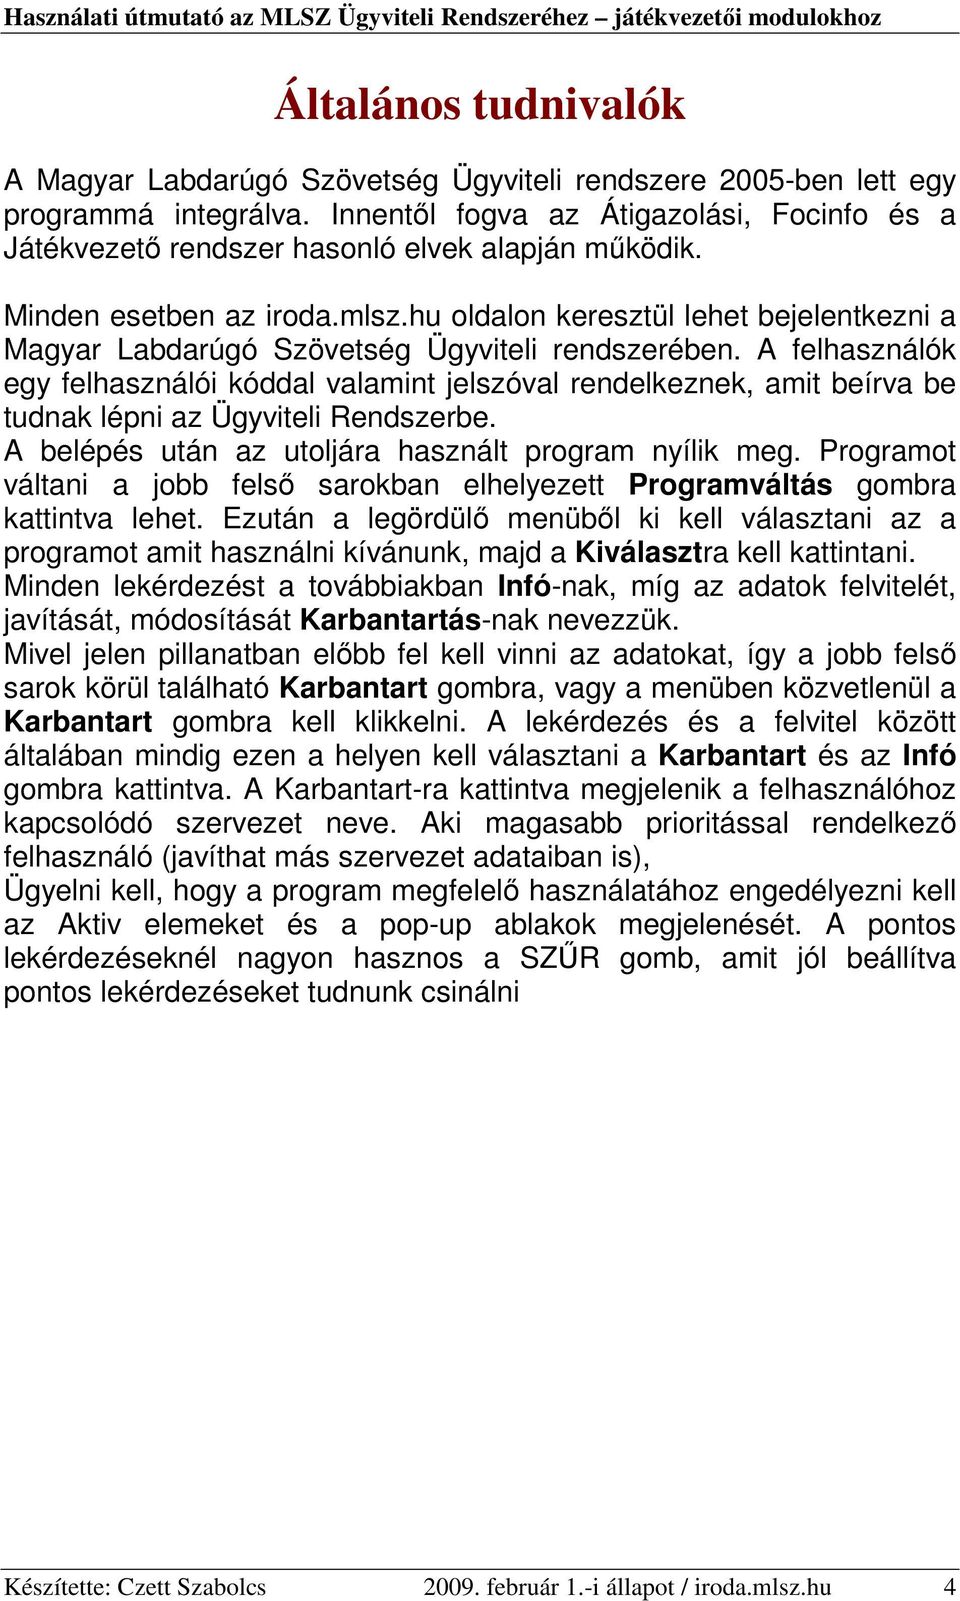 hu oldalon keresztül lehet bejelentkezni a Magyar Labdarúgó Szövetség Ügyviteli rendszerében.